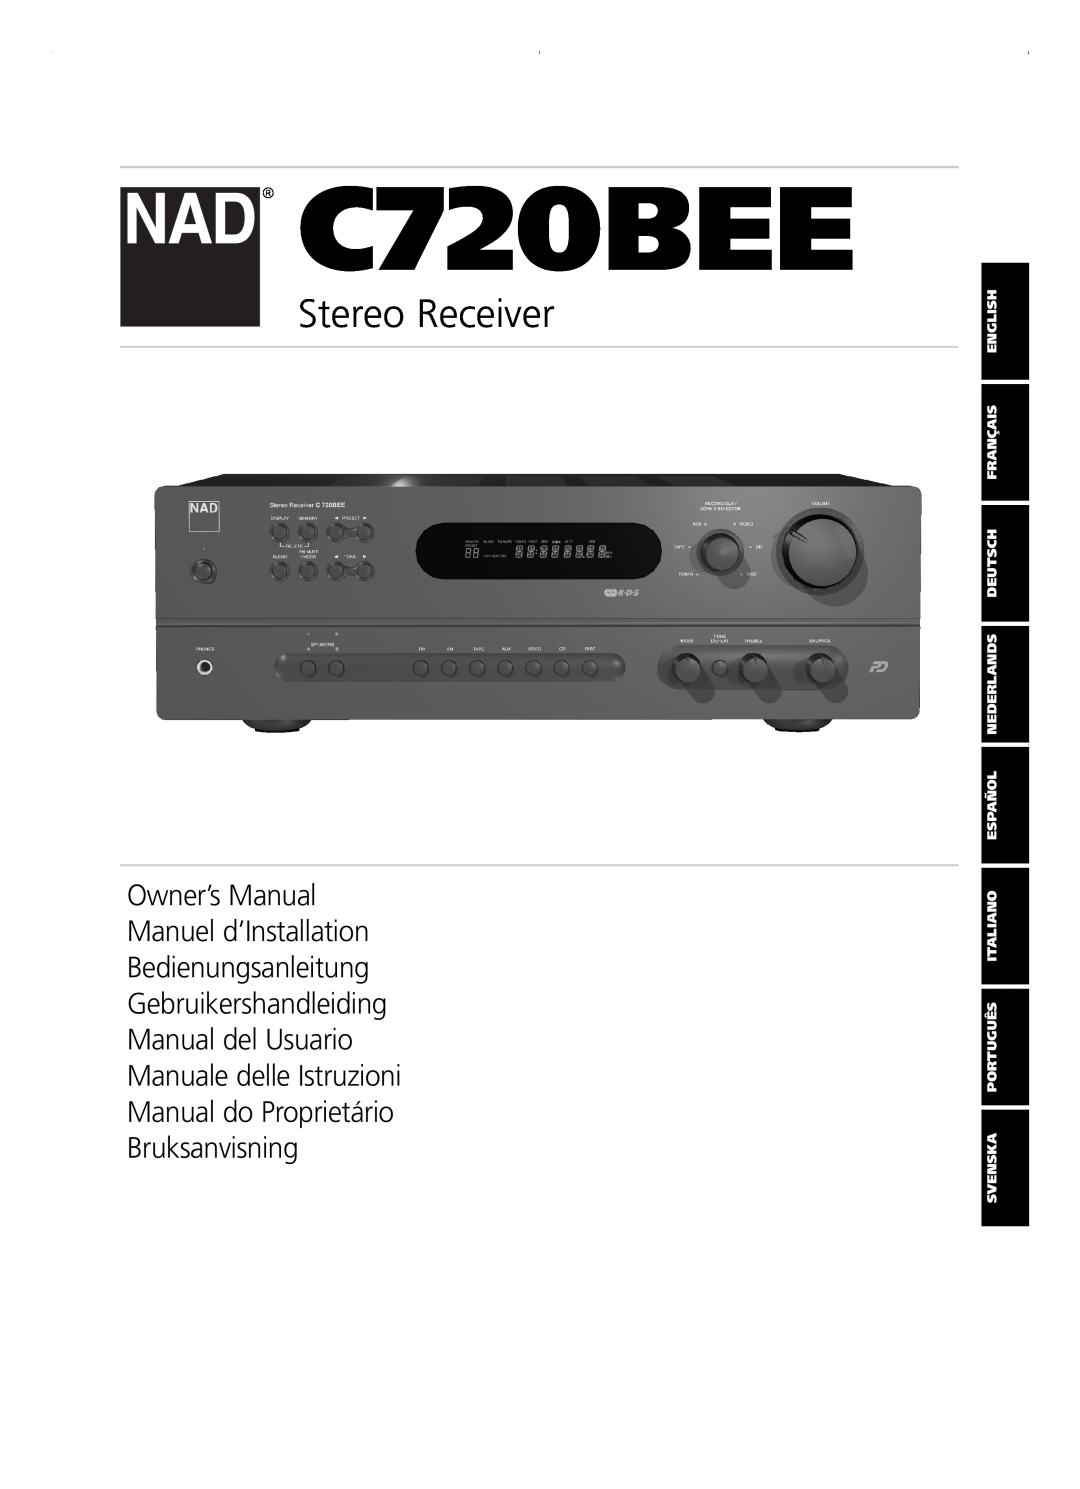 NAD C720BEE owner manual Stereo Receiver, Bedienungsanleitung Gebruikershandleiding, Manual do Proprietário Bruksanvisning 